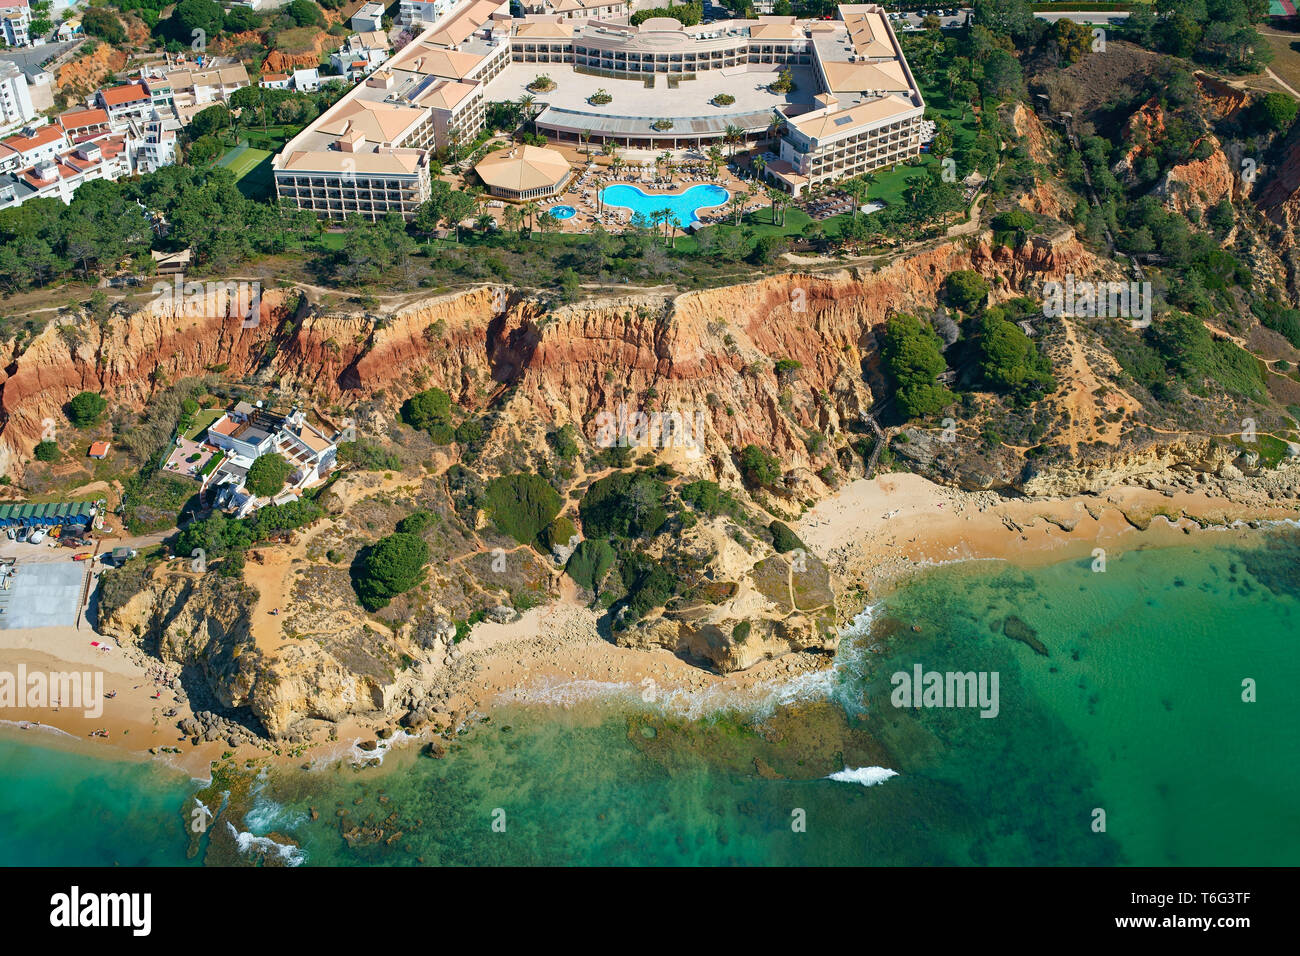 VISTA AEREA. Resort di lusso affacciato sulle colorate scogliere di Praia da Falésia sulle rive dell'Atlantico. Olhos de Agua, Albufeira, Algarve, Portogallo. Foto Stock